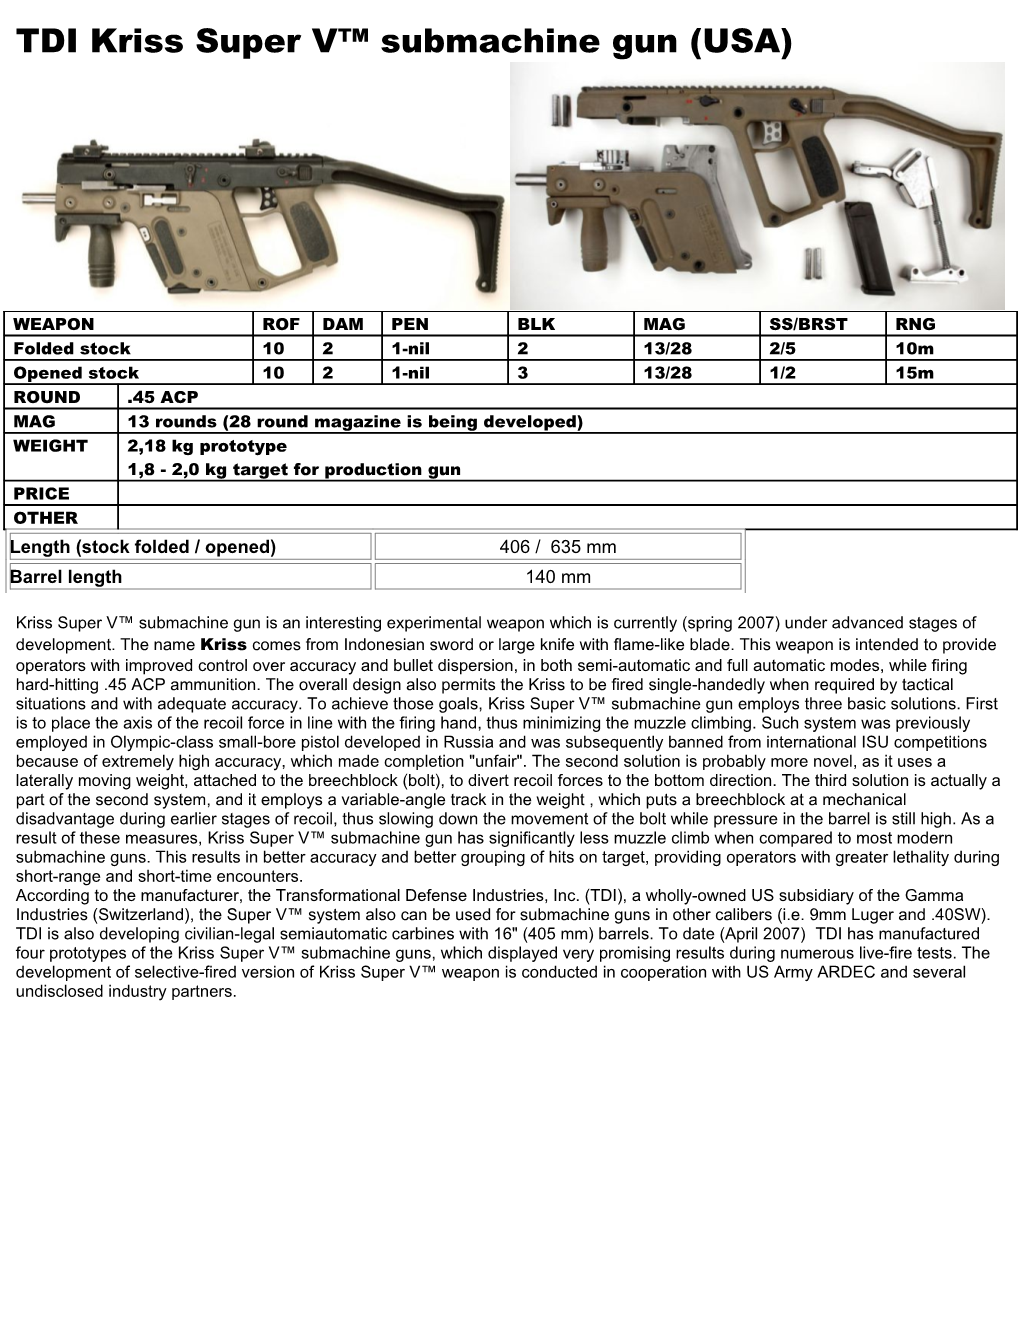 TDI Kriss Super V Submachine Gun (USA)